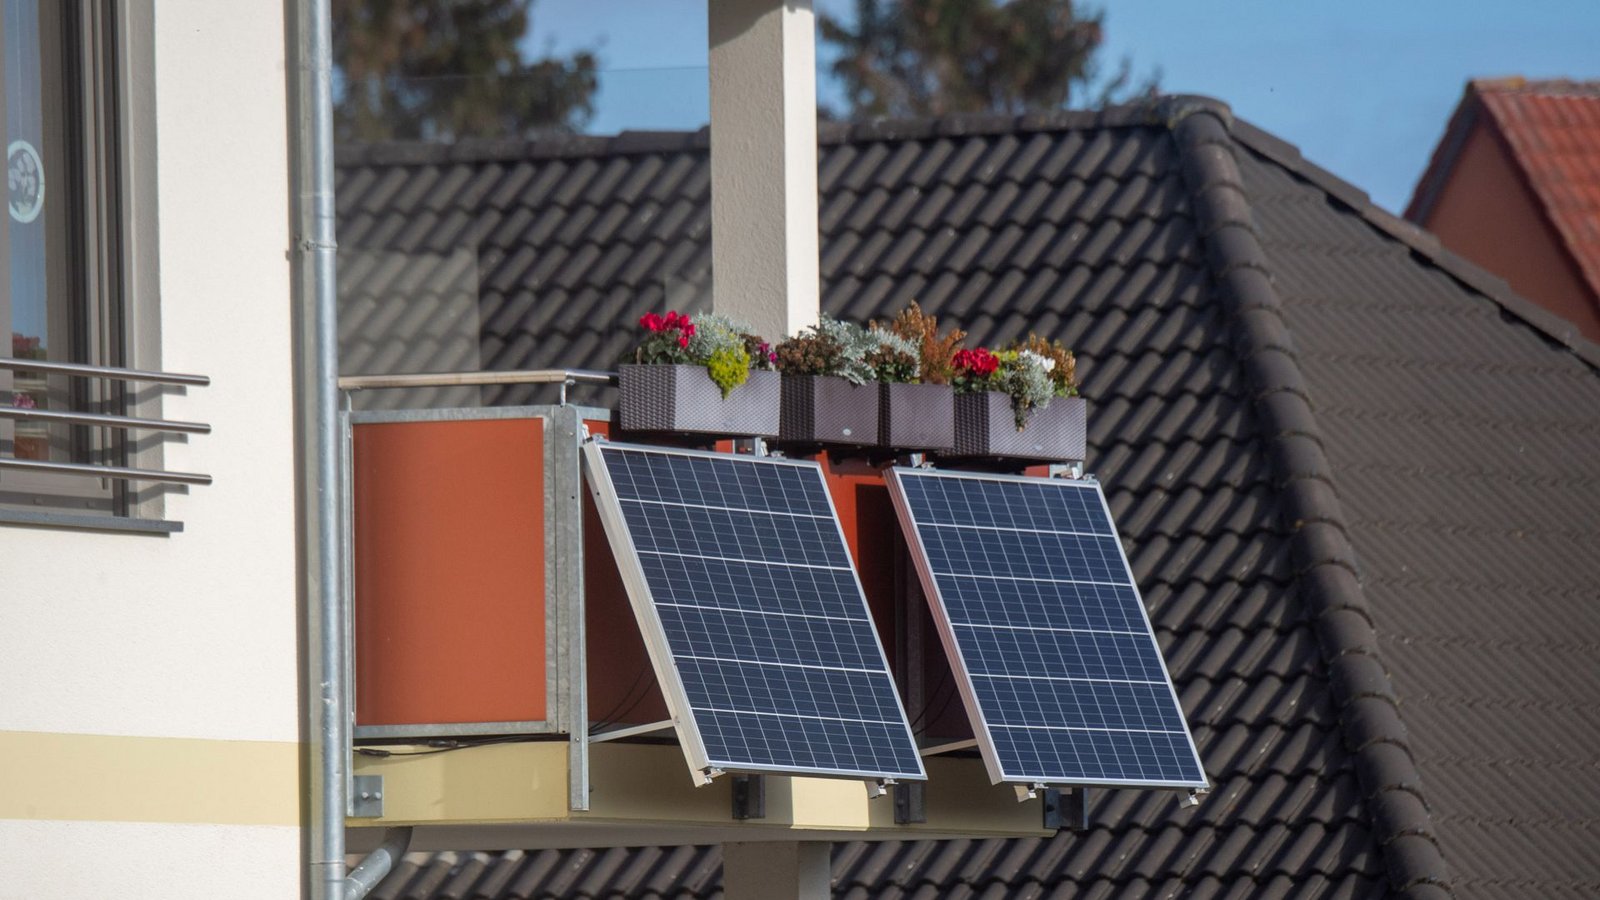 Solarmodule für ein sogenanntes Balkonkraftwerk hängen an einem Balkon. In einem Test von Stiftung Warentest schnitt nur eine Anlage gut ab (Symbolfoto).Foto: dpa/Stefan Sauer